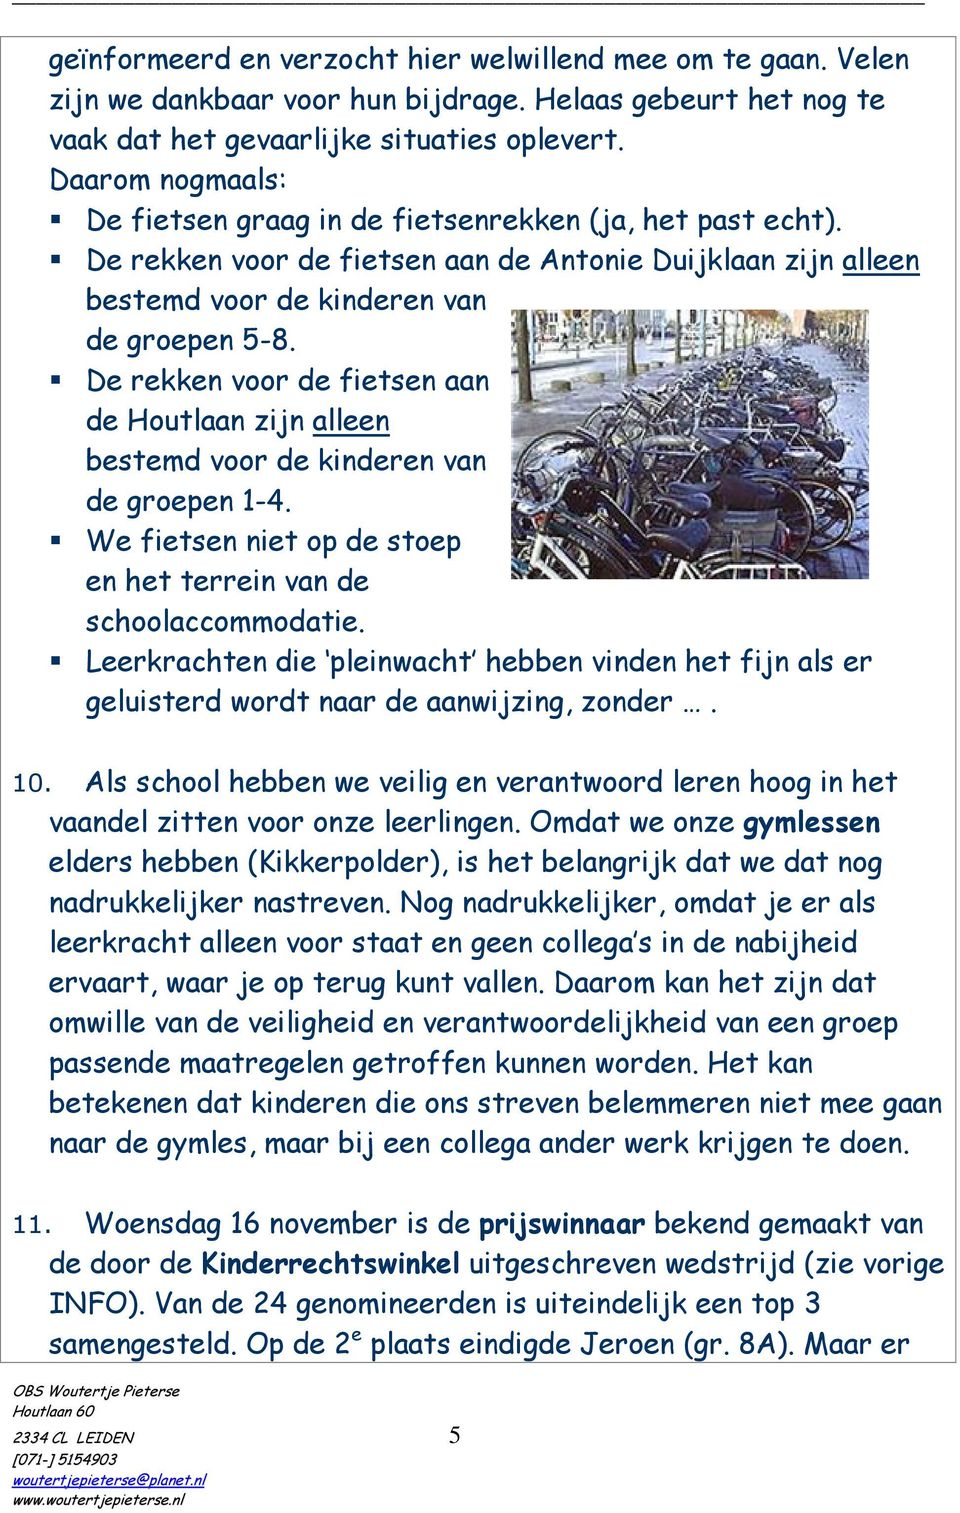 De rekken voor de fietsen aan de Houtlaan zijn alleen bestemd voor de kinderen van de groepen 1-4. We fietsen niet op de stoep en het terrein van de schoolaccommodatie.